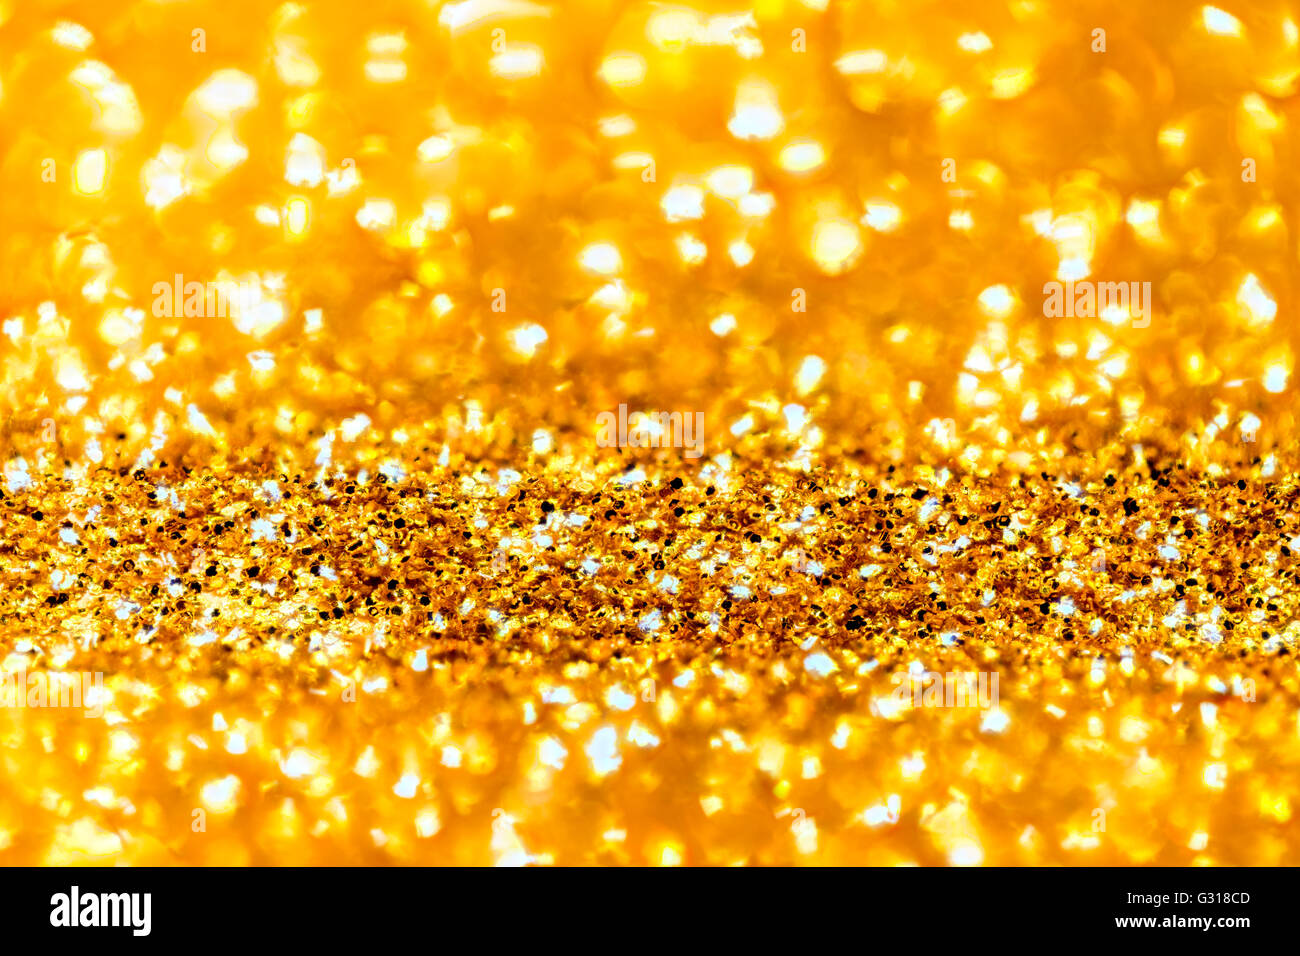 Details 300 Golden Glitter Background Hd Abzlocalmx